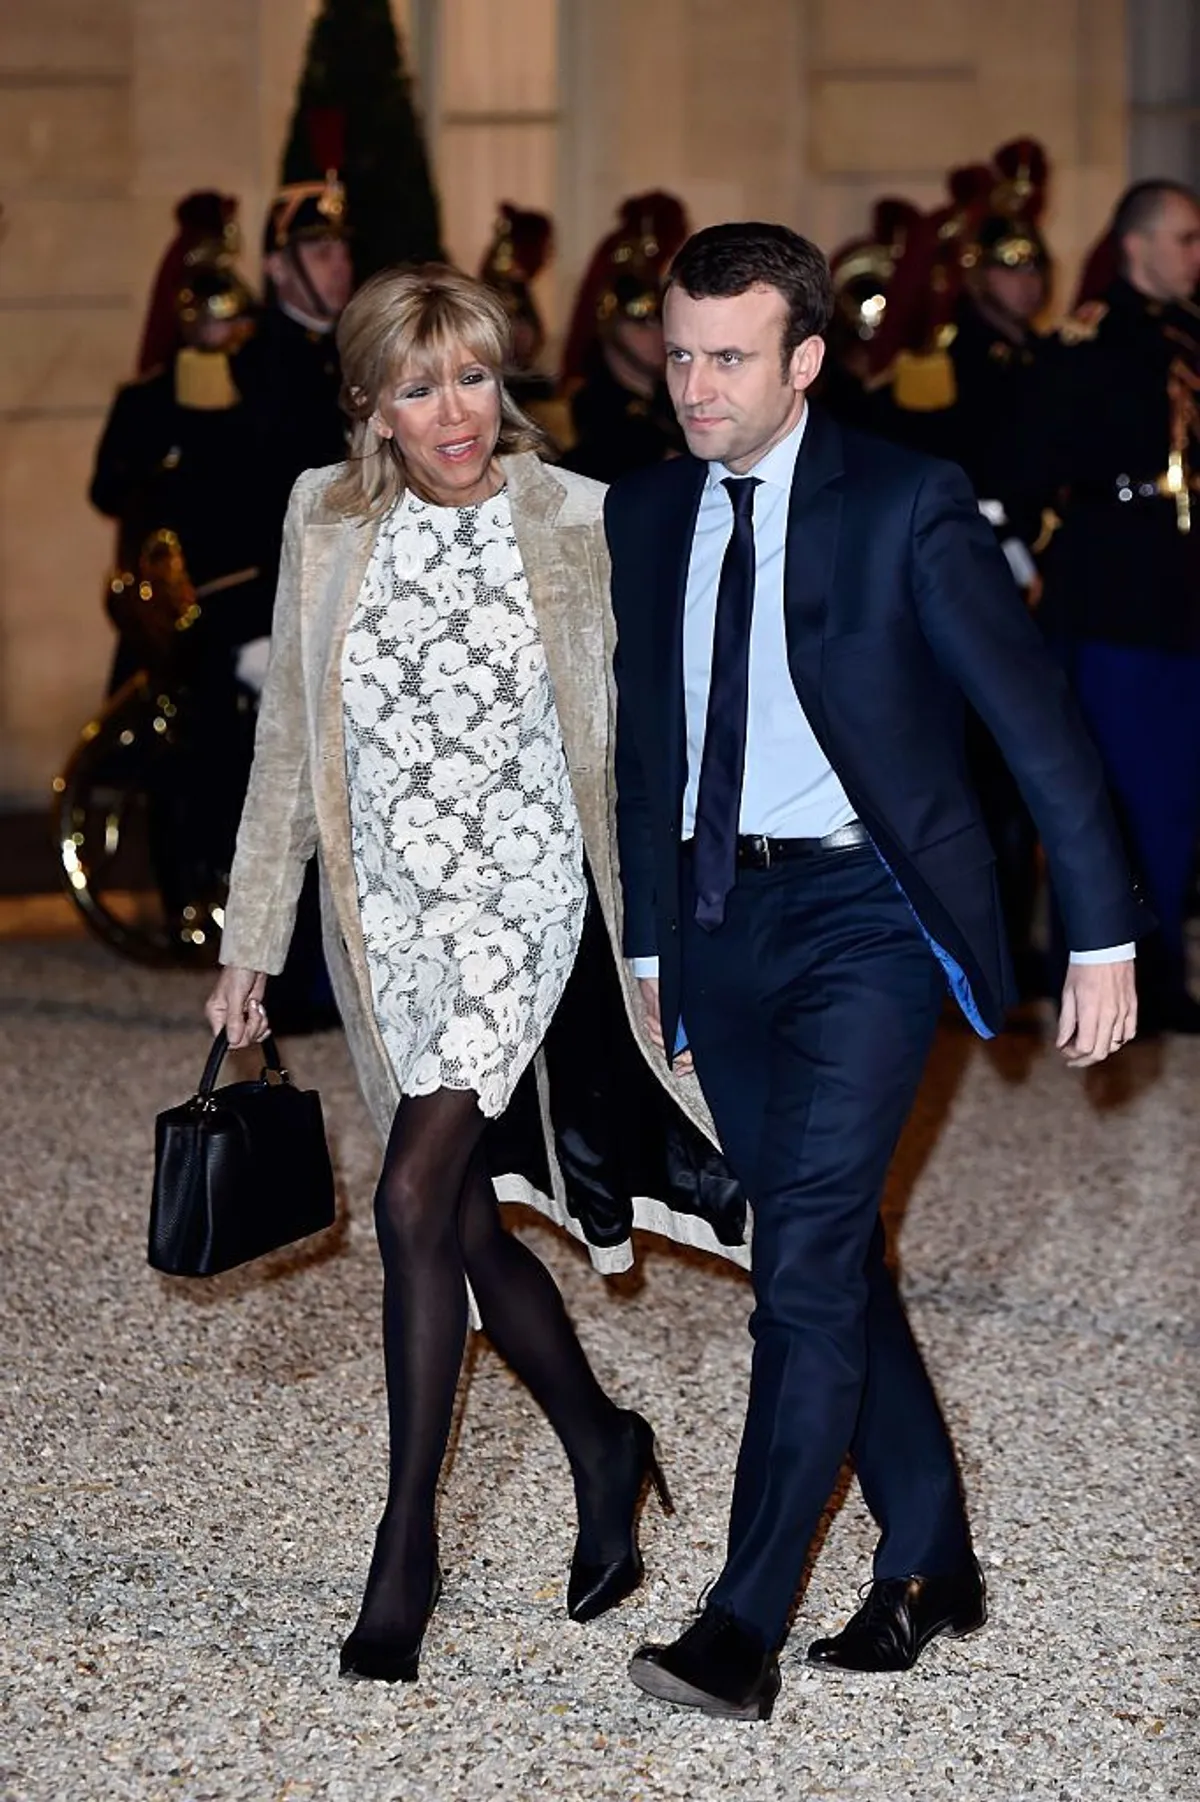 Emmanuel Macron et son épouse Brigitte arrivent au dîner d'État en l'honneur du roi Willem-Alexander des Pays-Bas et de la reine Maxima le 10 mars 2016 à Paris, France. | Photo : Getty Images